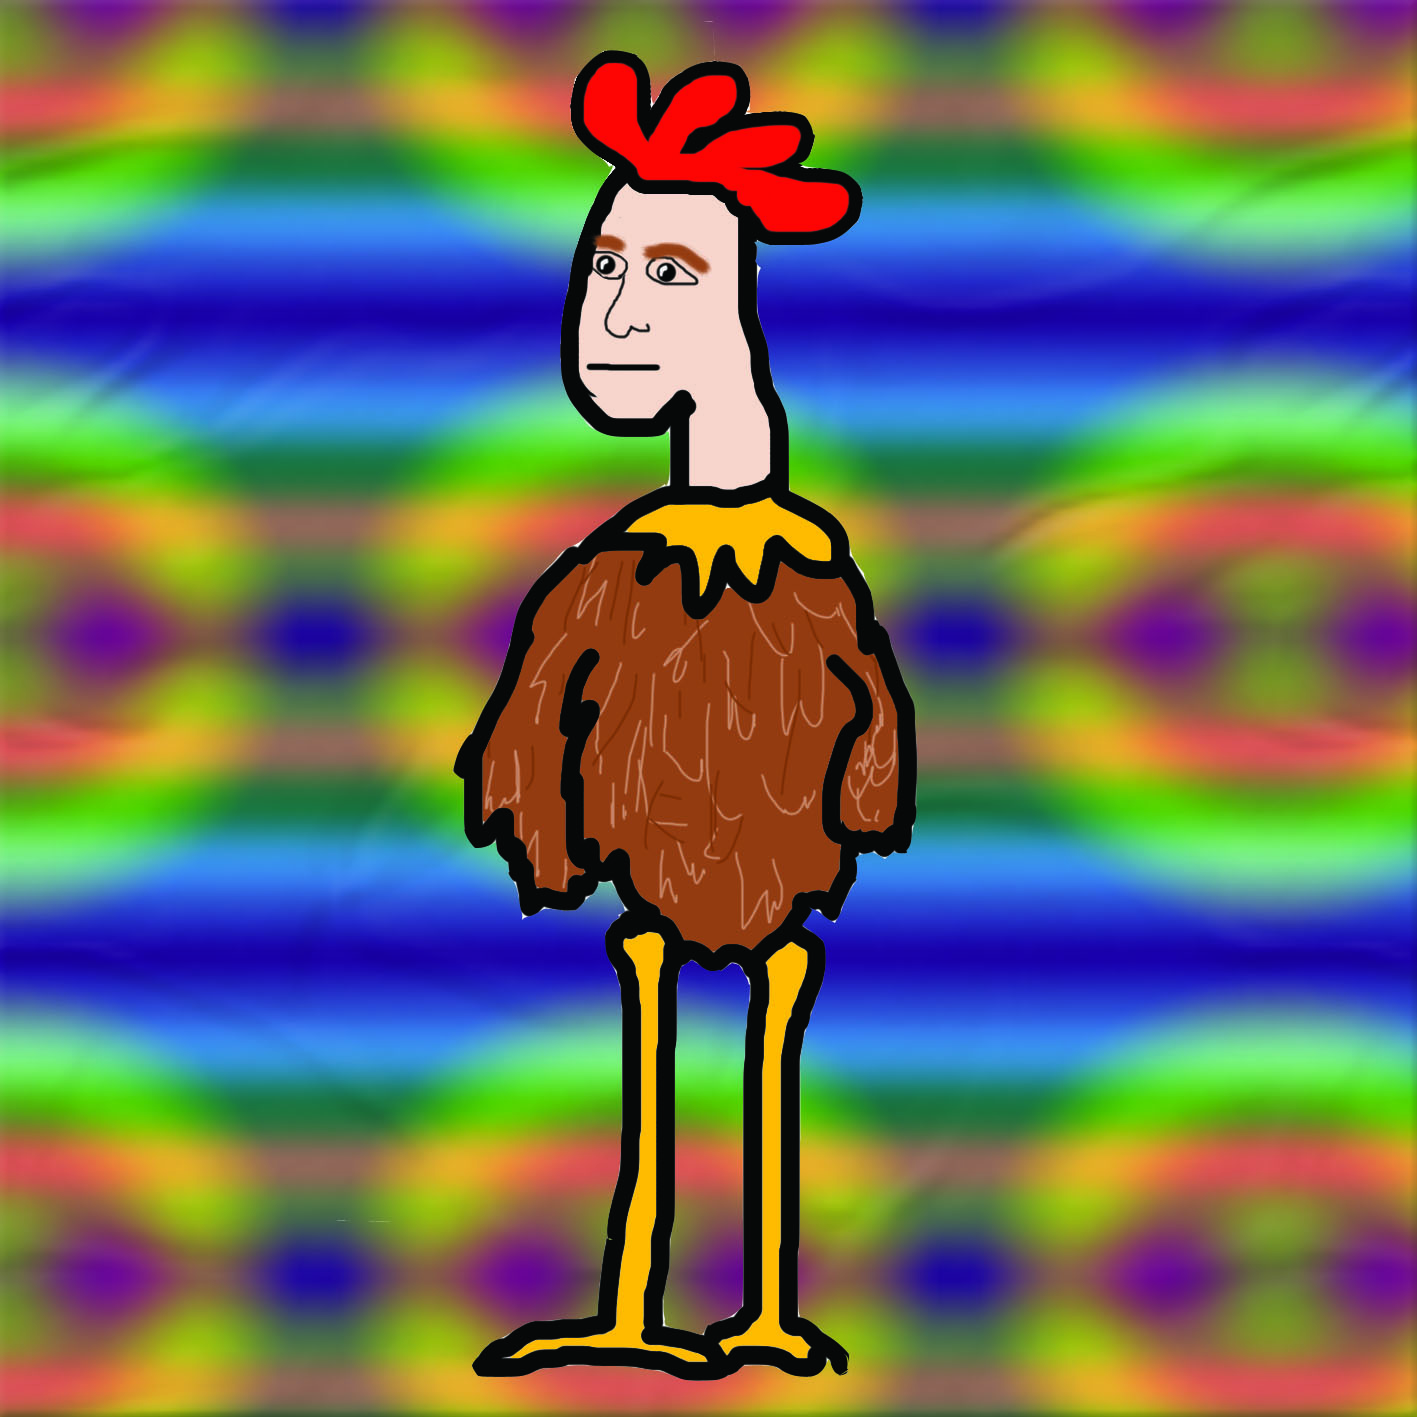 Disco chicken Alan by dodd9030